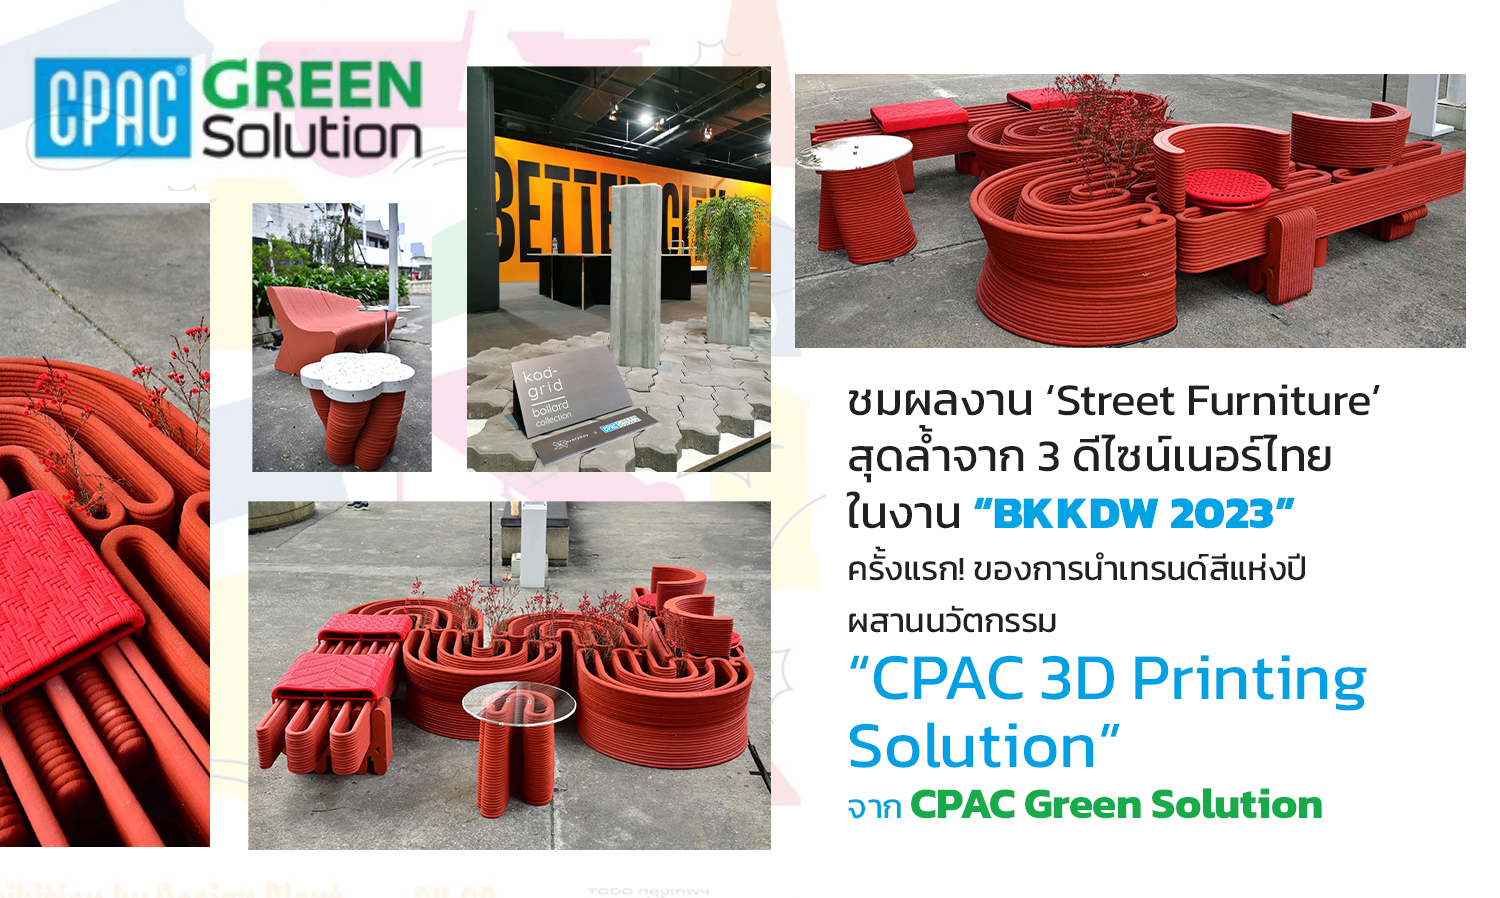 ชมผลงาน Street Furniture สุดล้ำจาก 3 ดีไซน์เนอร์ไทย ในงาน BKKDW 2023 นำเทรนด์สีแห่งปี ผสานนวัตกรรม CPAC 3D Printing Solution จาก CPAC Green Solution